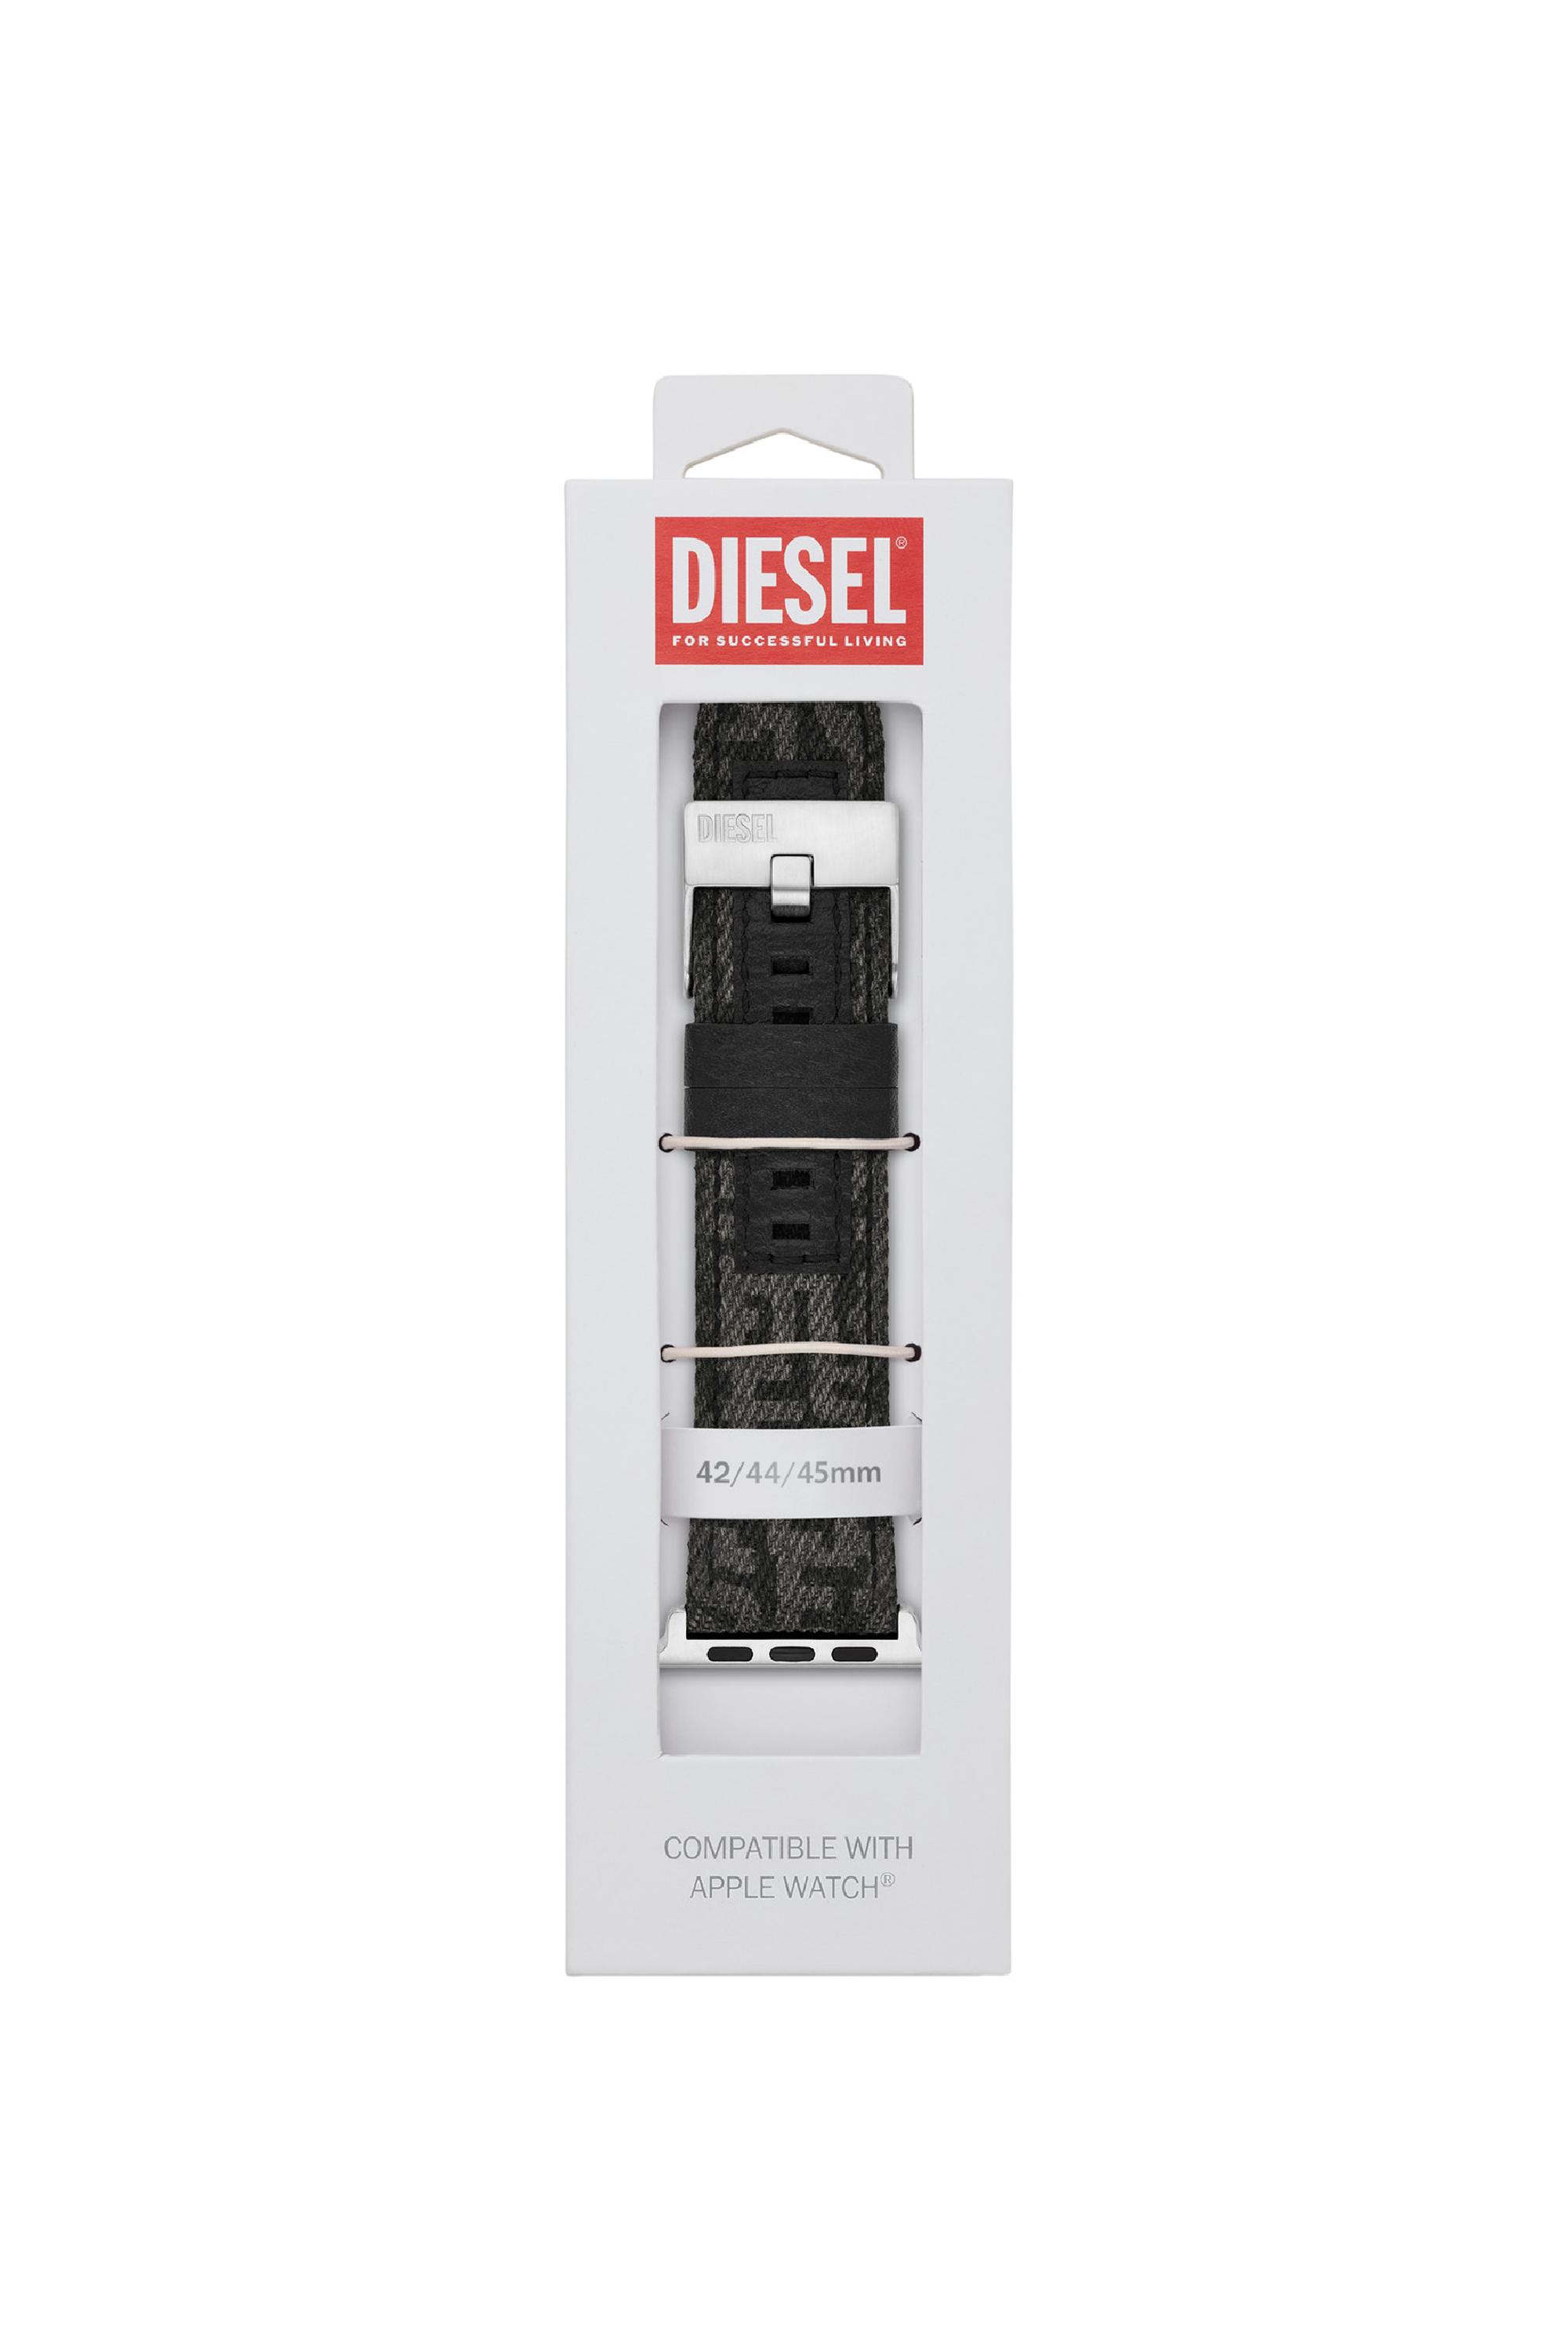 Diesel - DSS0012, Black - Image 2